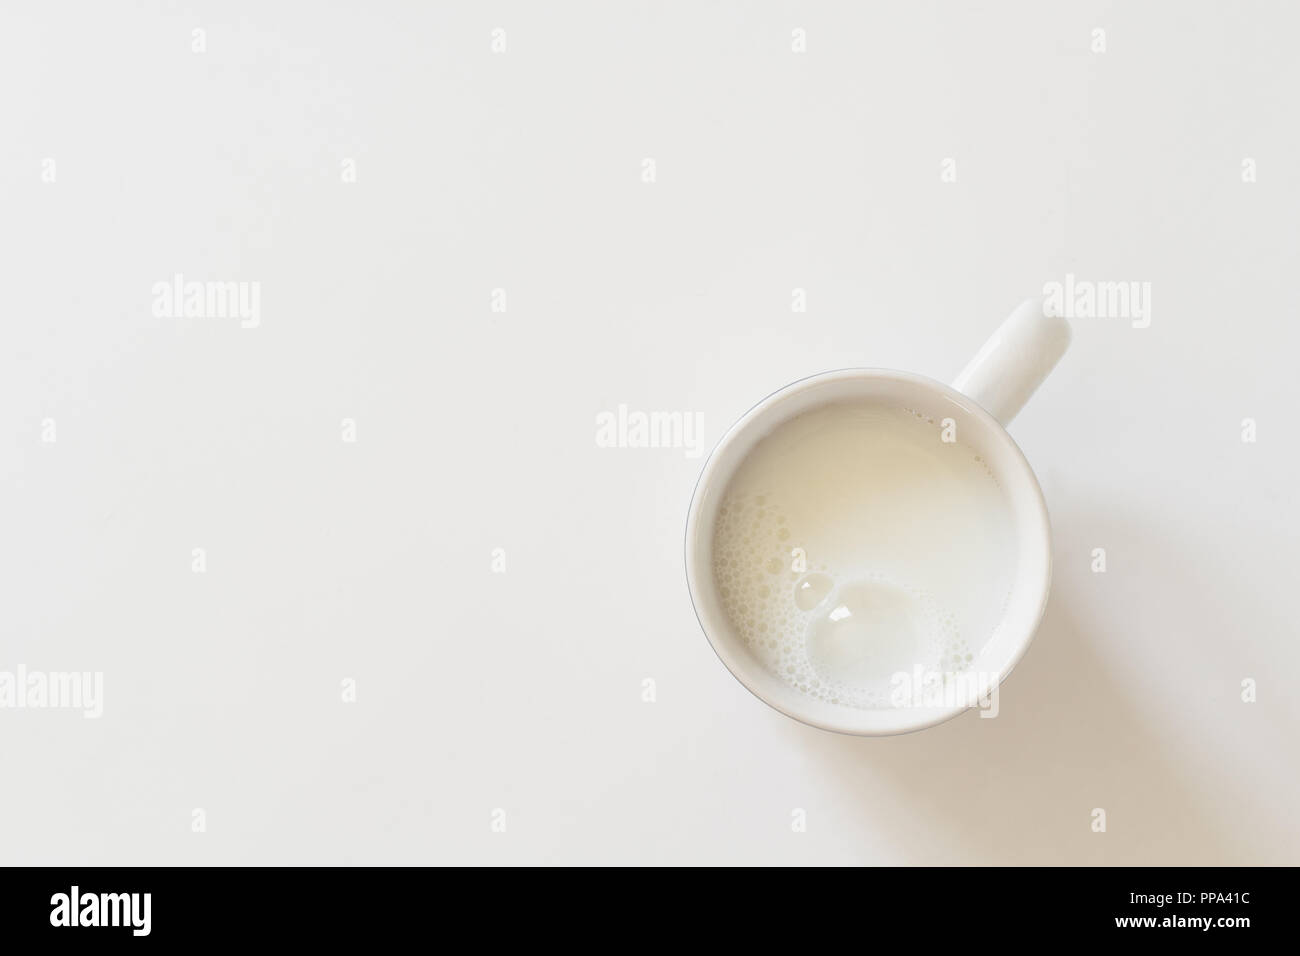 Köstliche Tasse Milch auf Weiß mit kopieren. Von oben nach unten anzeigen. Stockfoto